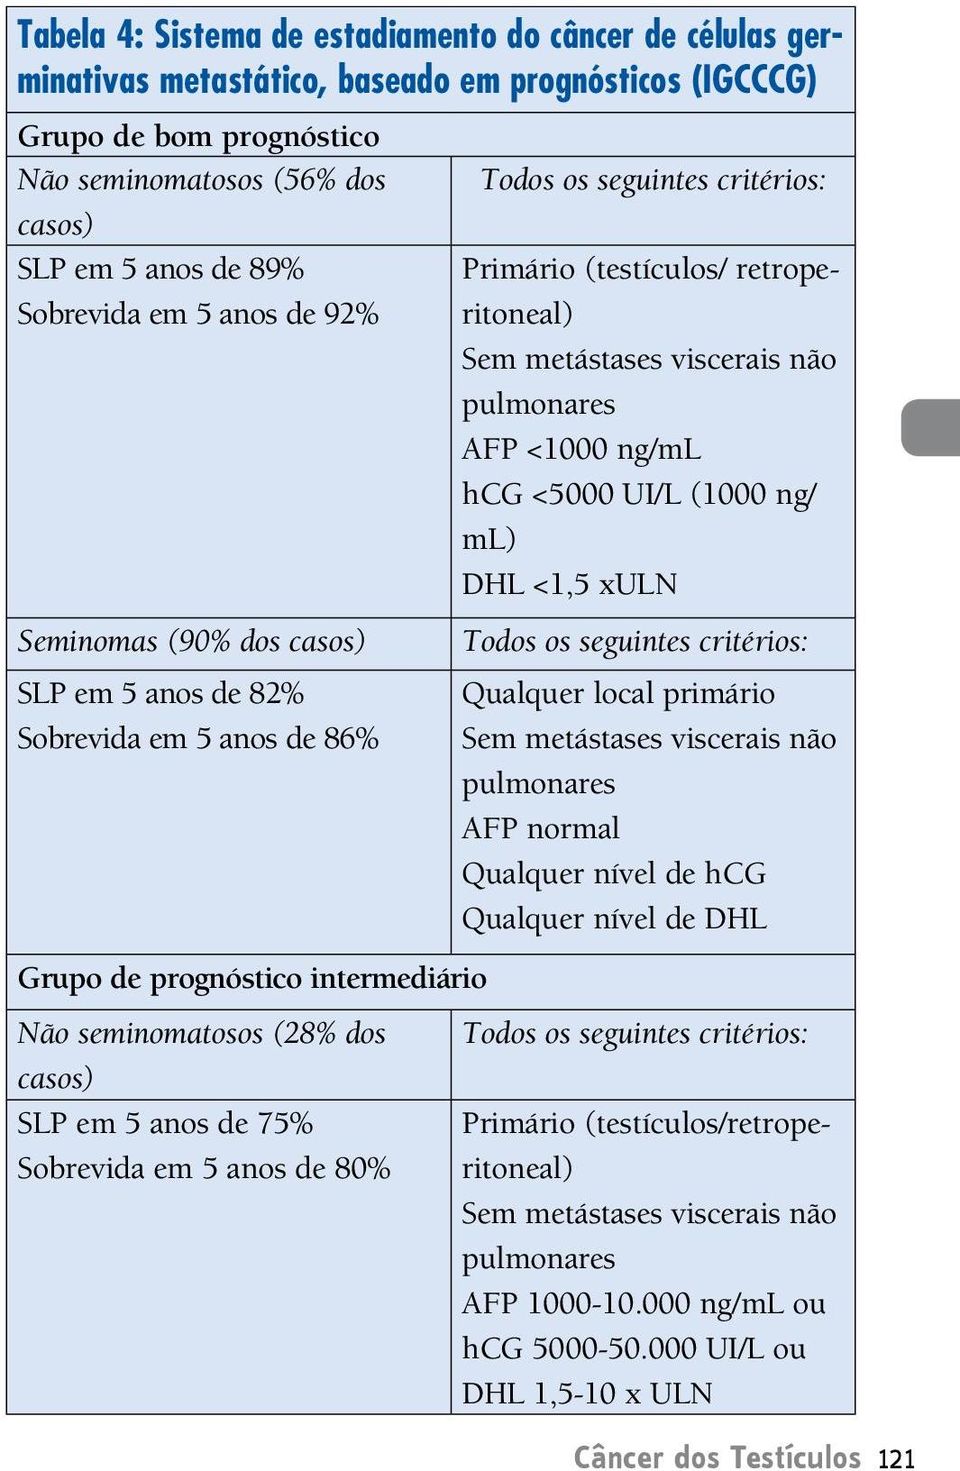 pulmonares FP <1000 ng/ml hcg <5000 UI/L (1000 ng/ ml) DHL <1,5 xuln Todos os seguintes critérios: Qualquer local primário Sem metástases viscerais não pulmonares FP normal Qualquer nível de hcg